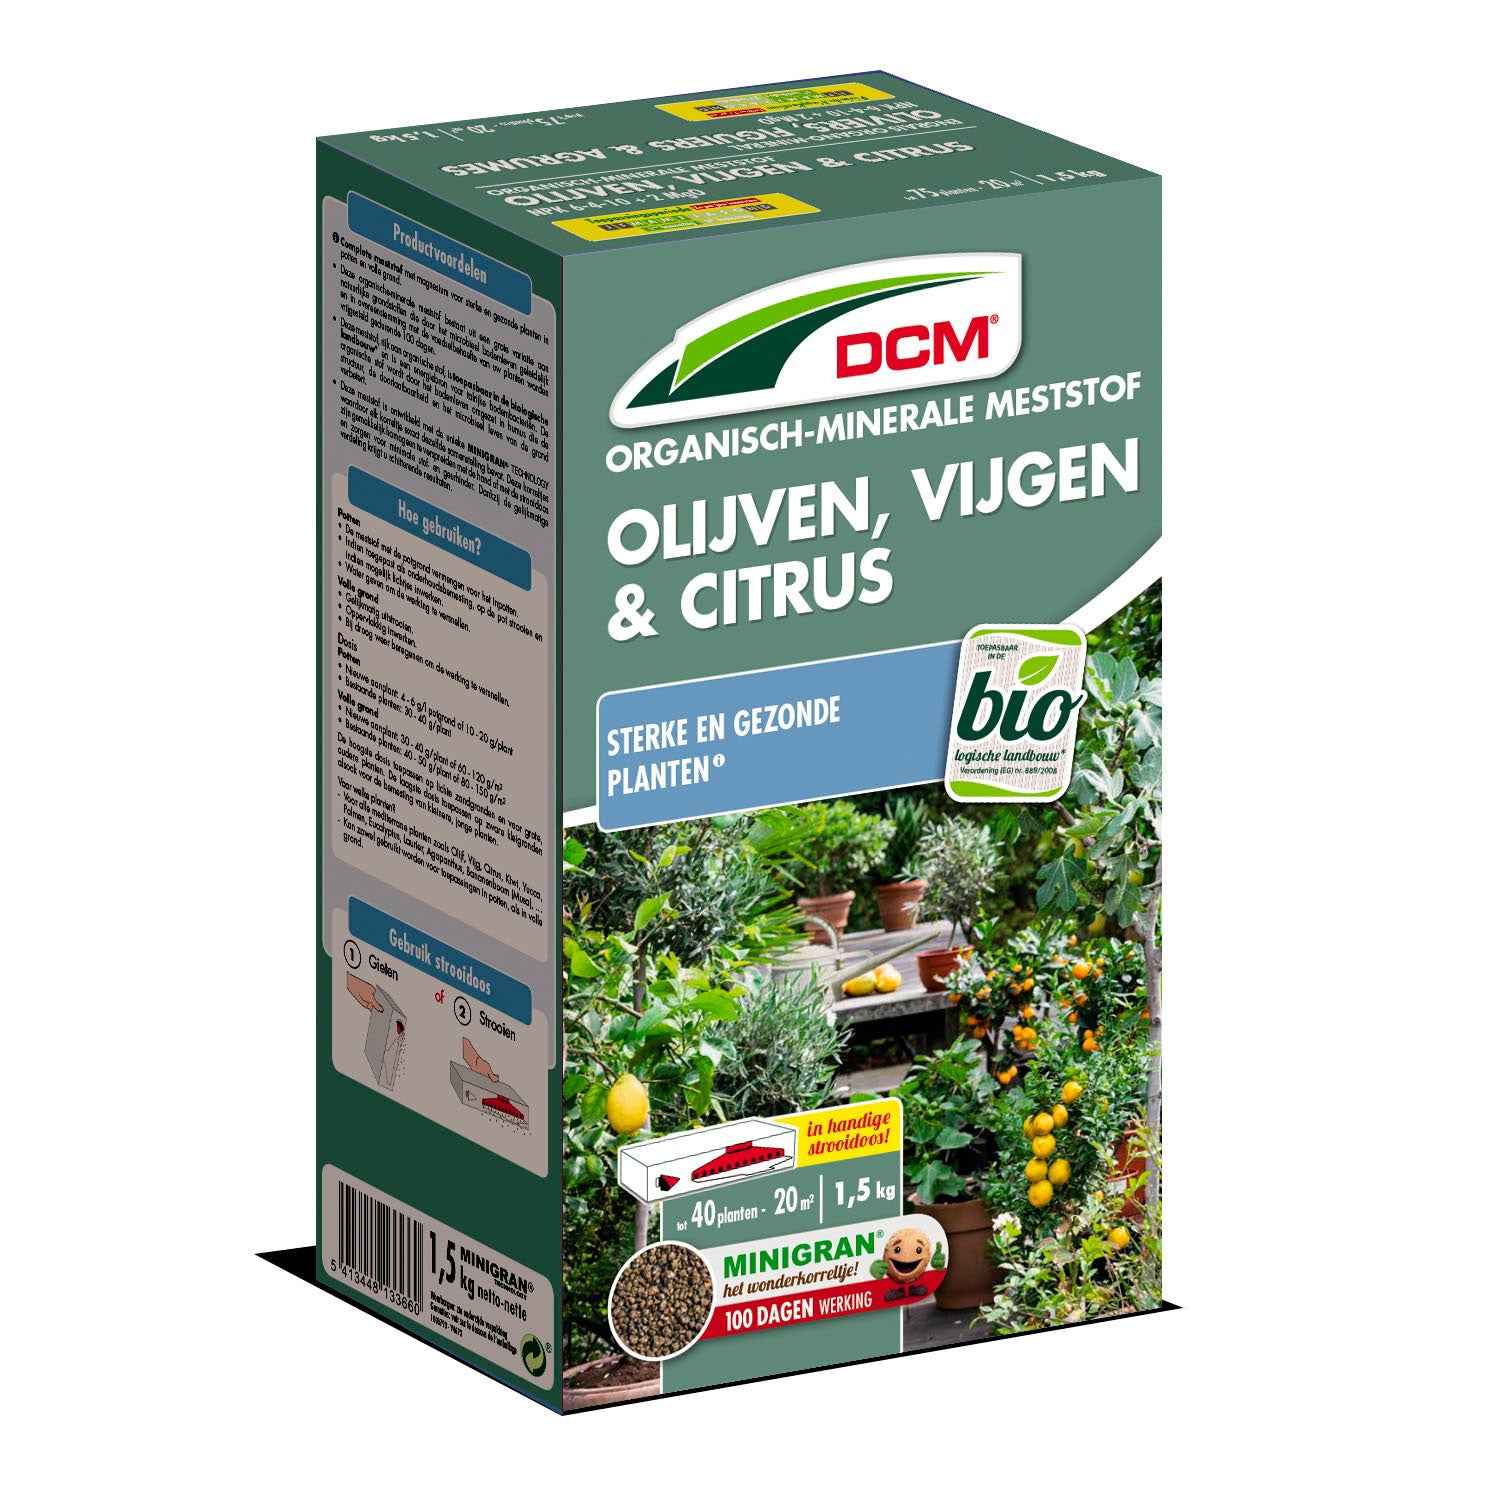 Plantenvoeding voor olijven, vijgen & citrus - Biologisch 1,5 kg - DCM - Biologische plantenvoeding